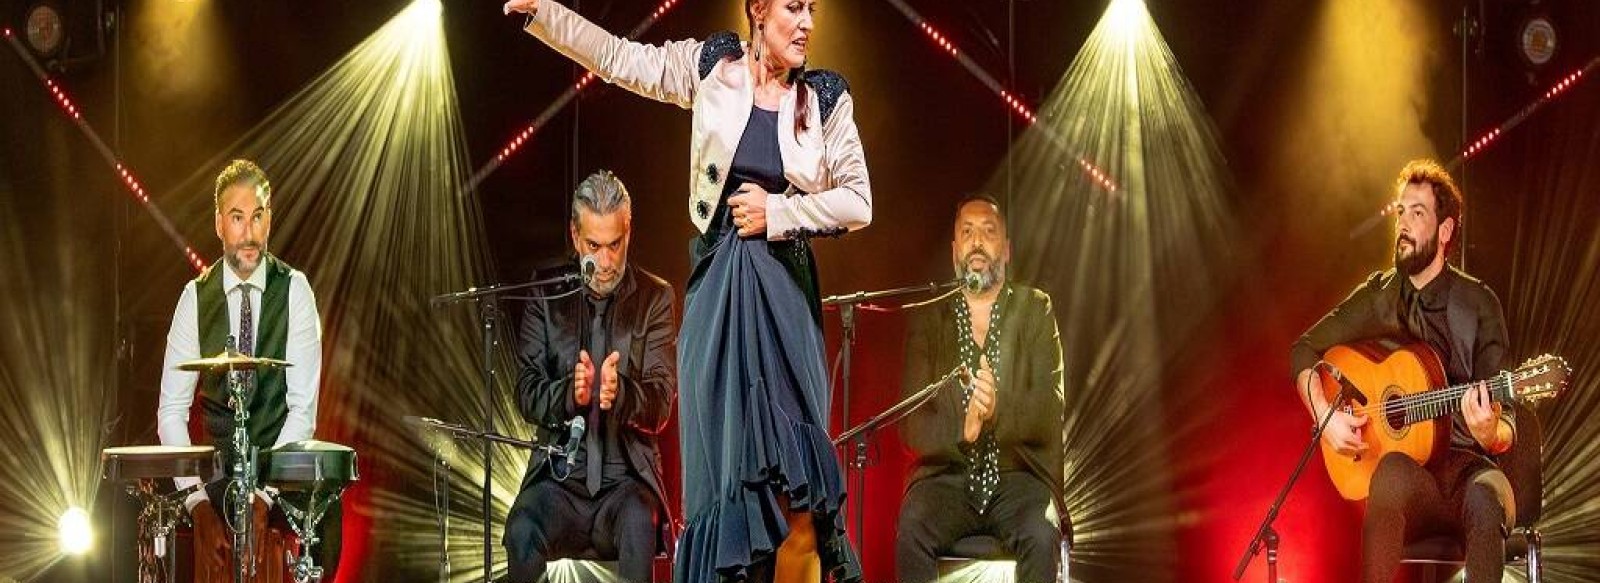 Festival du Foin dans les Granges : Soiree Flamenco et Jazz Manouche !